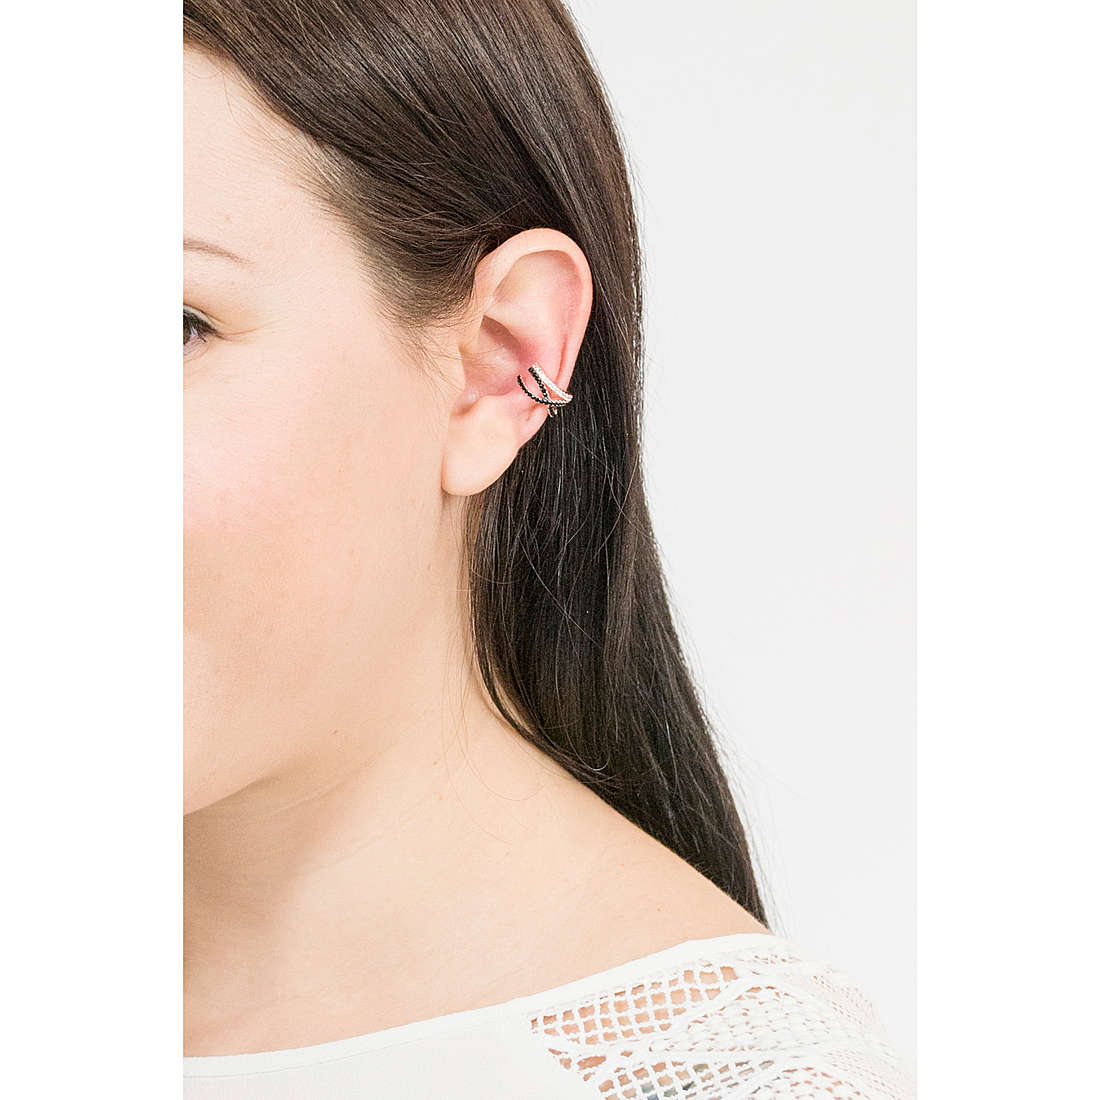 Rebecca earrings Golden ear woman SGEORN11 wearing